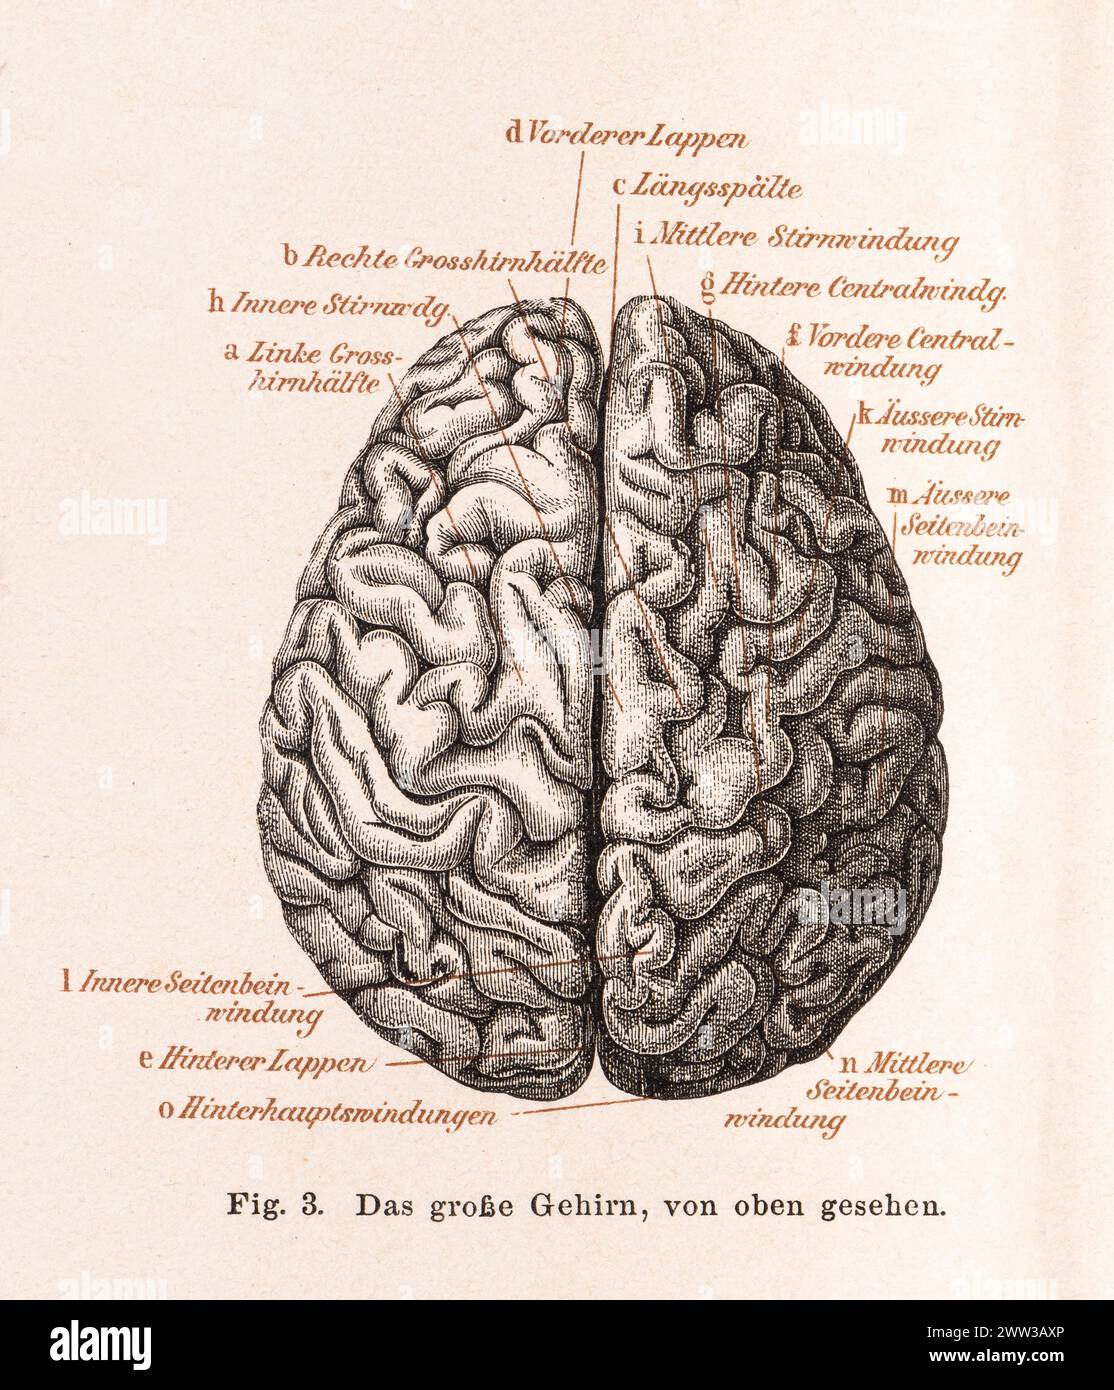 Medicina, anatomia, illustrazione, cervello umano dall'alto, cervello, cervello con convoluzioni dettagliate, con etichettatura, cerebrale sinistro e destro Foto Stock